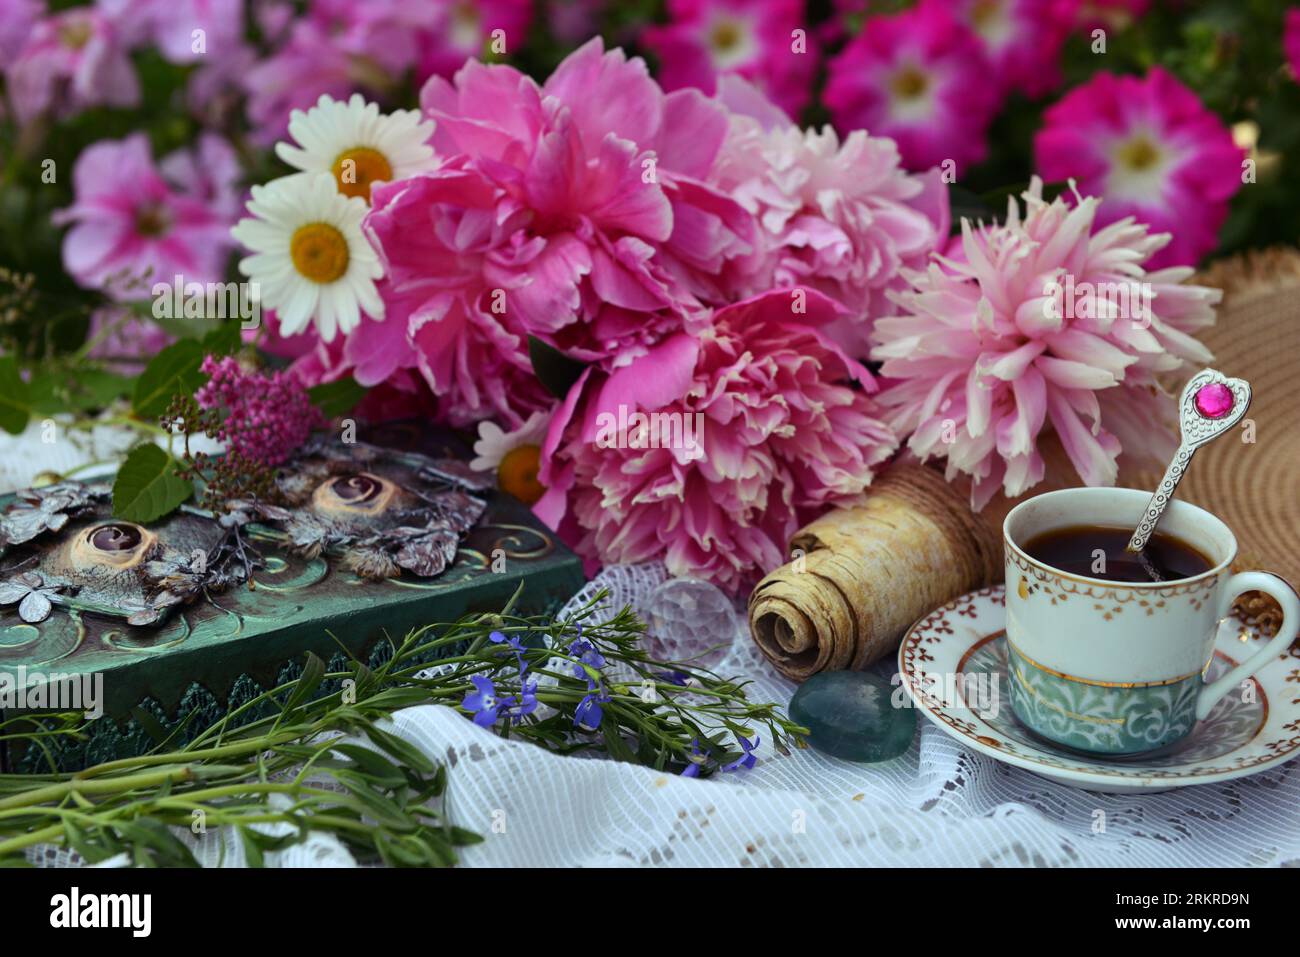 Belle nature morte avec des fleurs de pivoine, livre décoré et tasse de thé sur la table. Carte de voeux romantique pour anniversaire, Saint Valentin, concept de fête des mères Banque D'Images